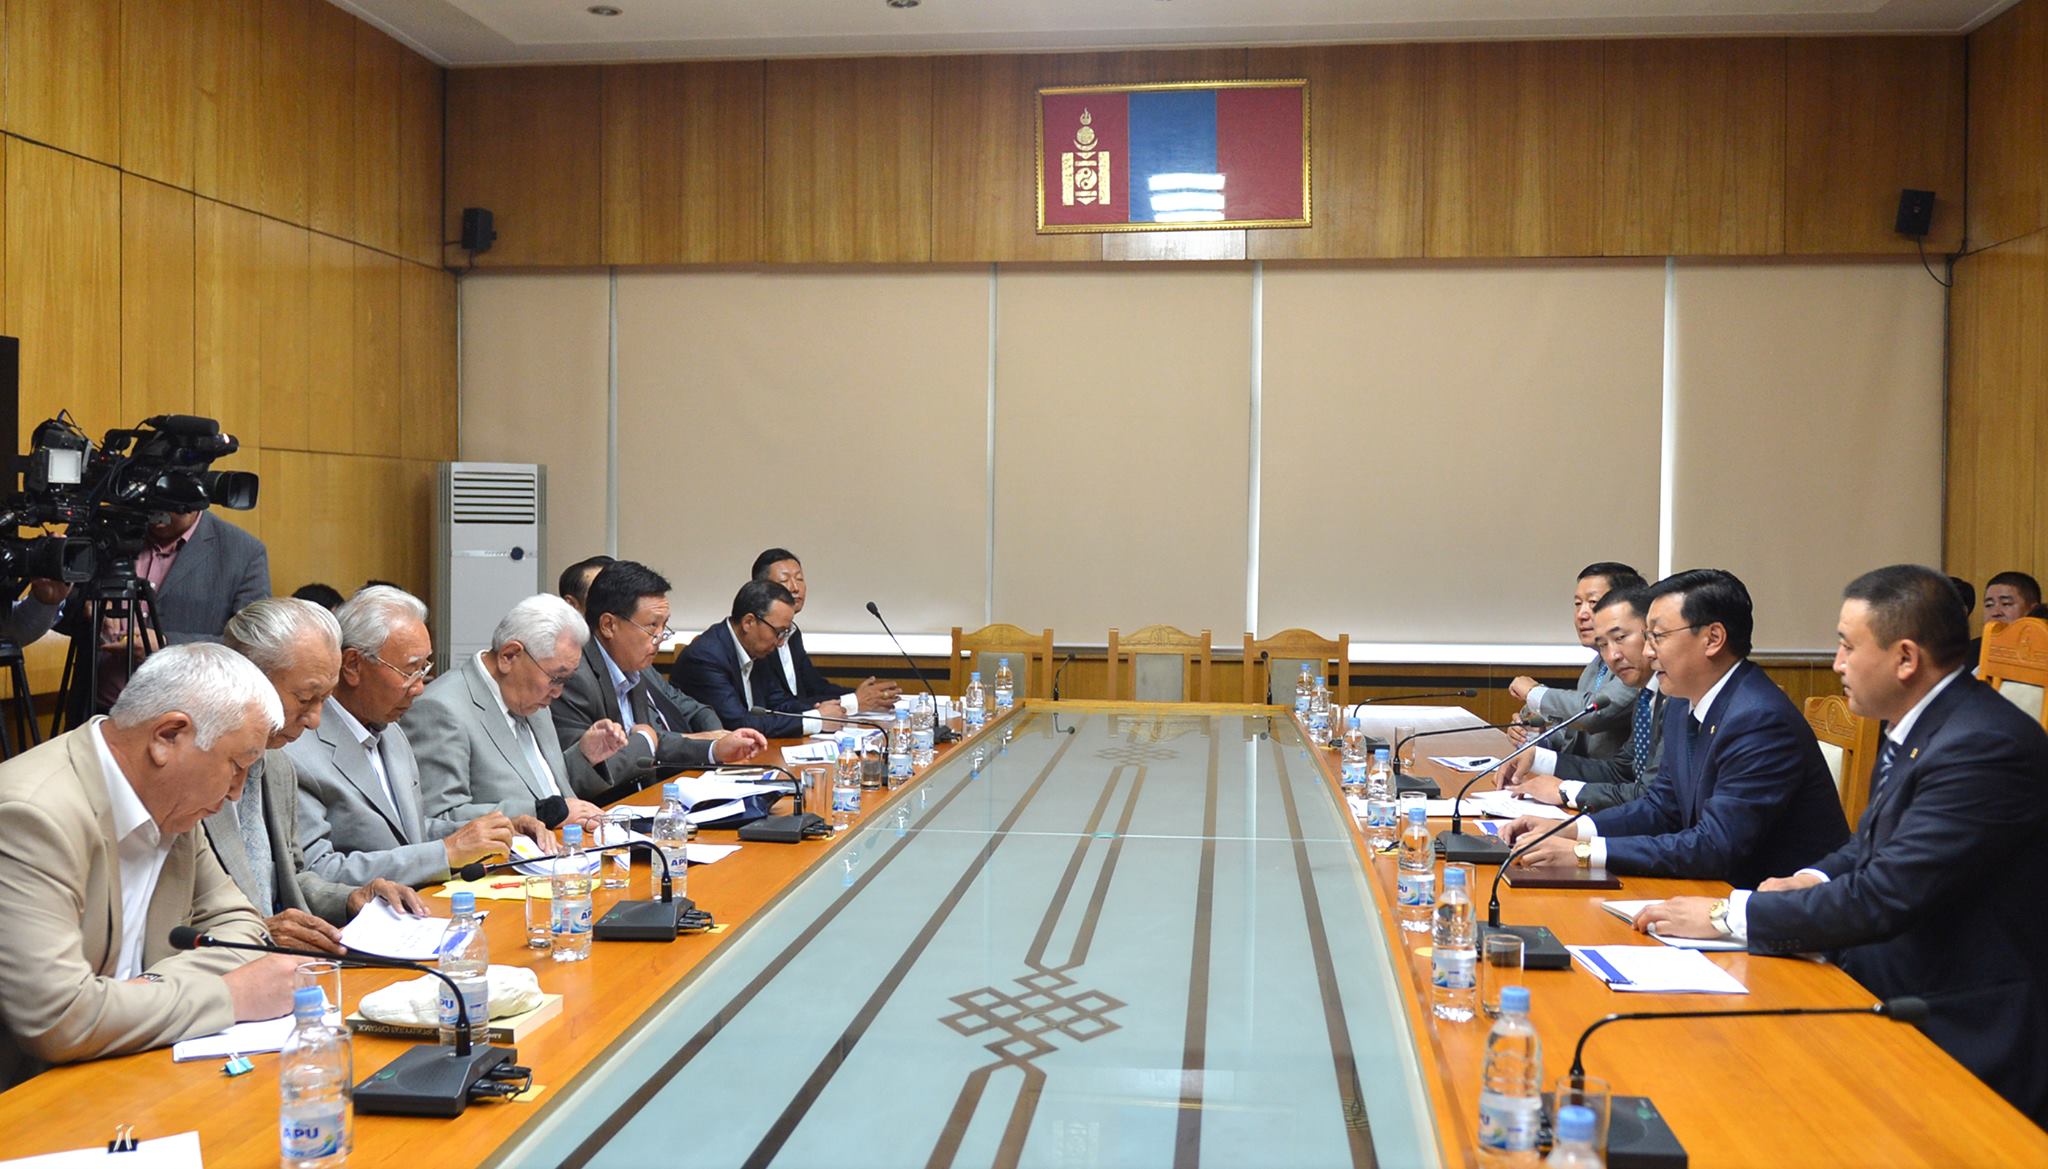 Үе үеийн Ерөнхий сайд, Сангийн сайд, Монголбанкны ерөнхийлөгч нартай уулзлаа